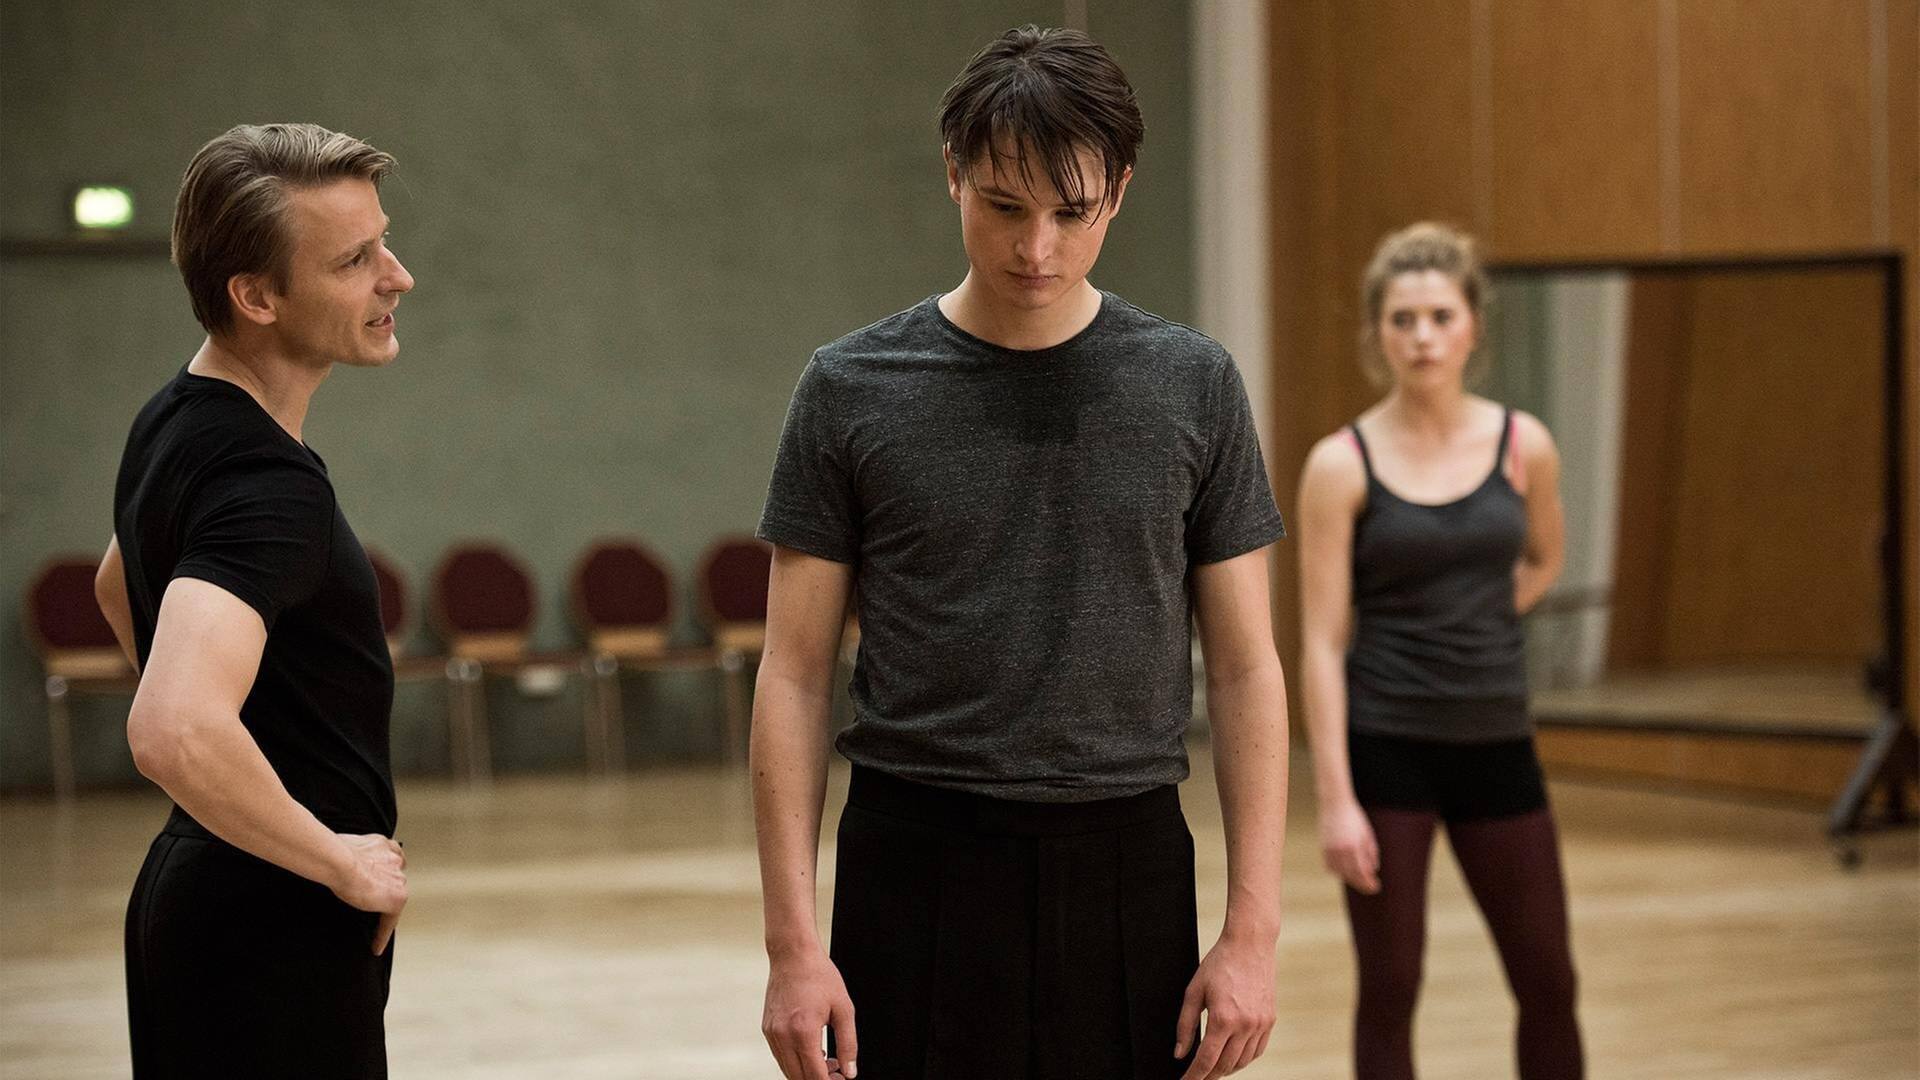 Tanztrainer Andreas Roth (Max von Pufendorf, l) fordert volle Konzentration von seinen Tänzern Jonas Körner (Gordon Kämmerer, M) und Marie Ade (Mersiha Husagic, r).